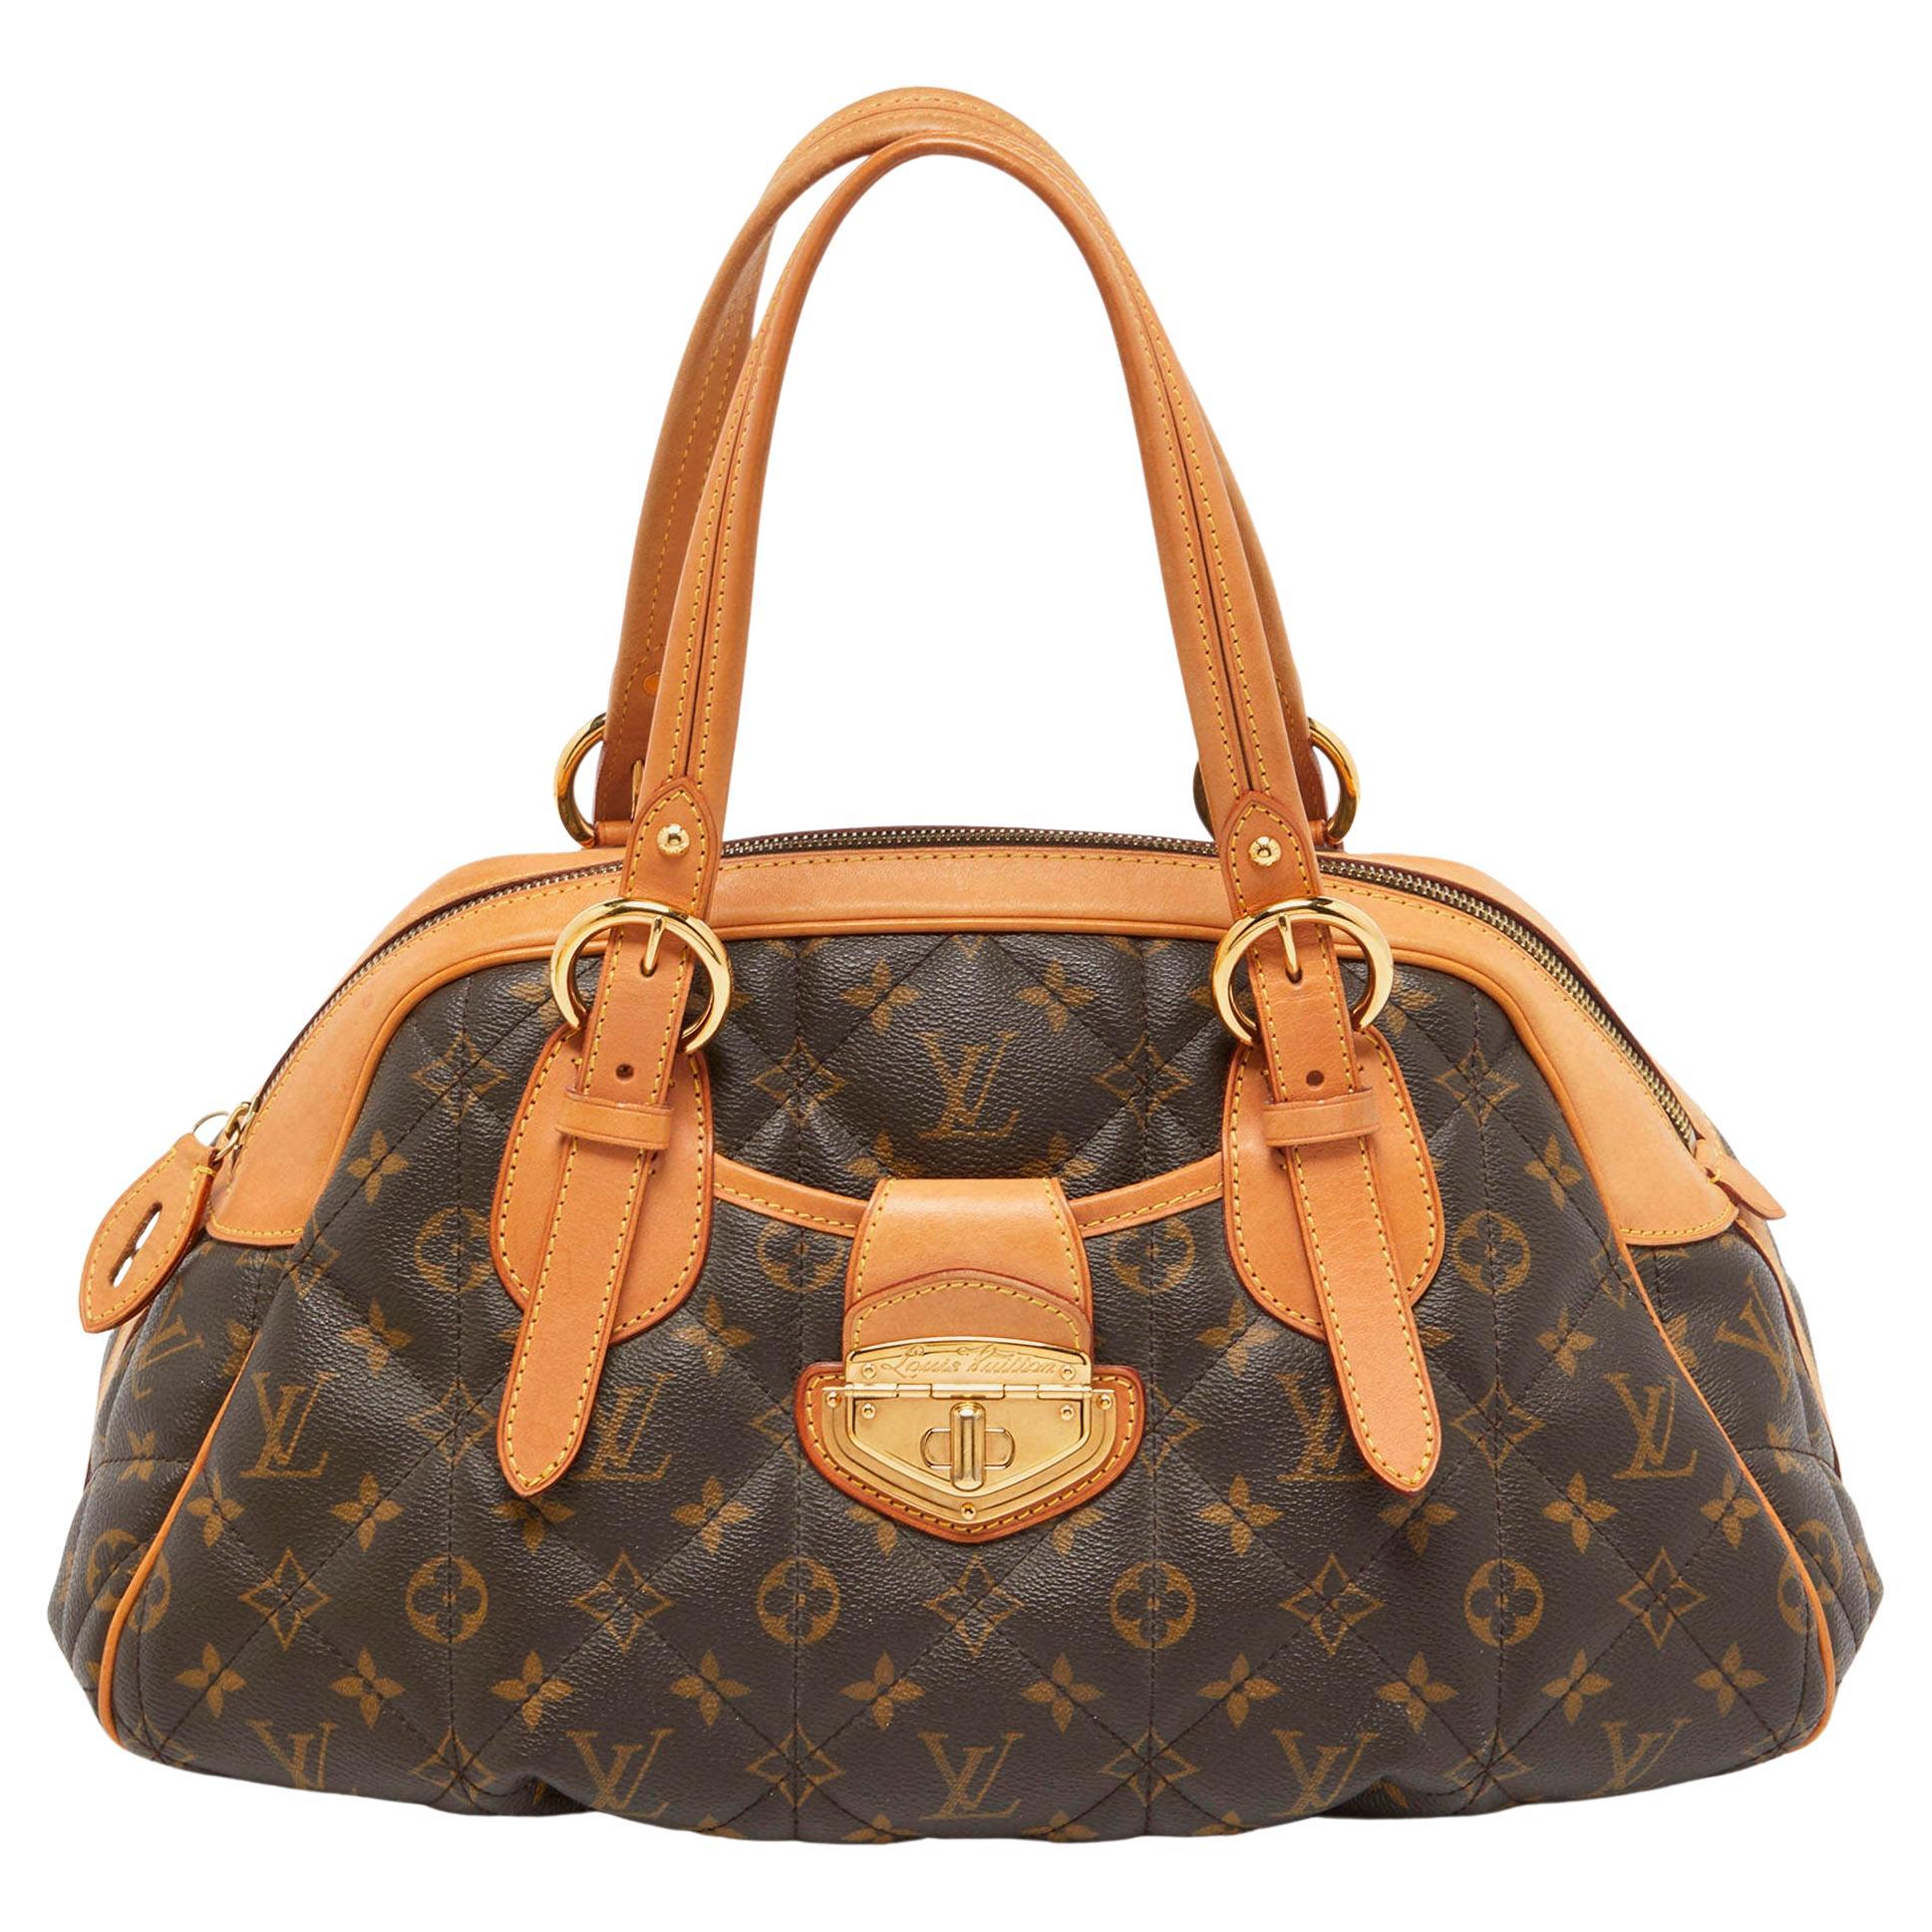 New Statement Bag: Louis Vuitton Bowling Vanity Tuffetage Bag